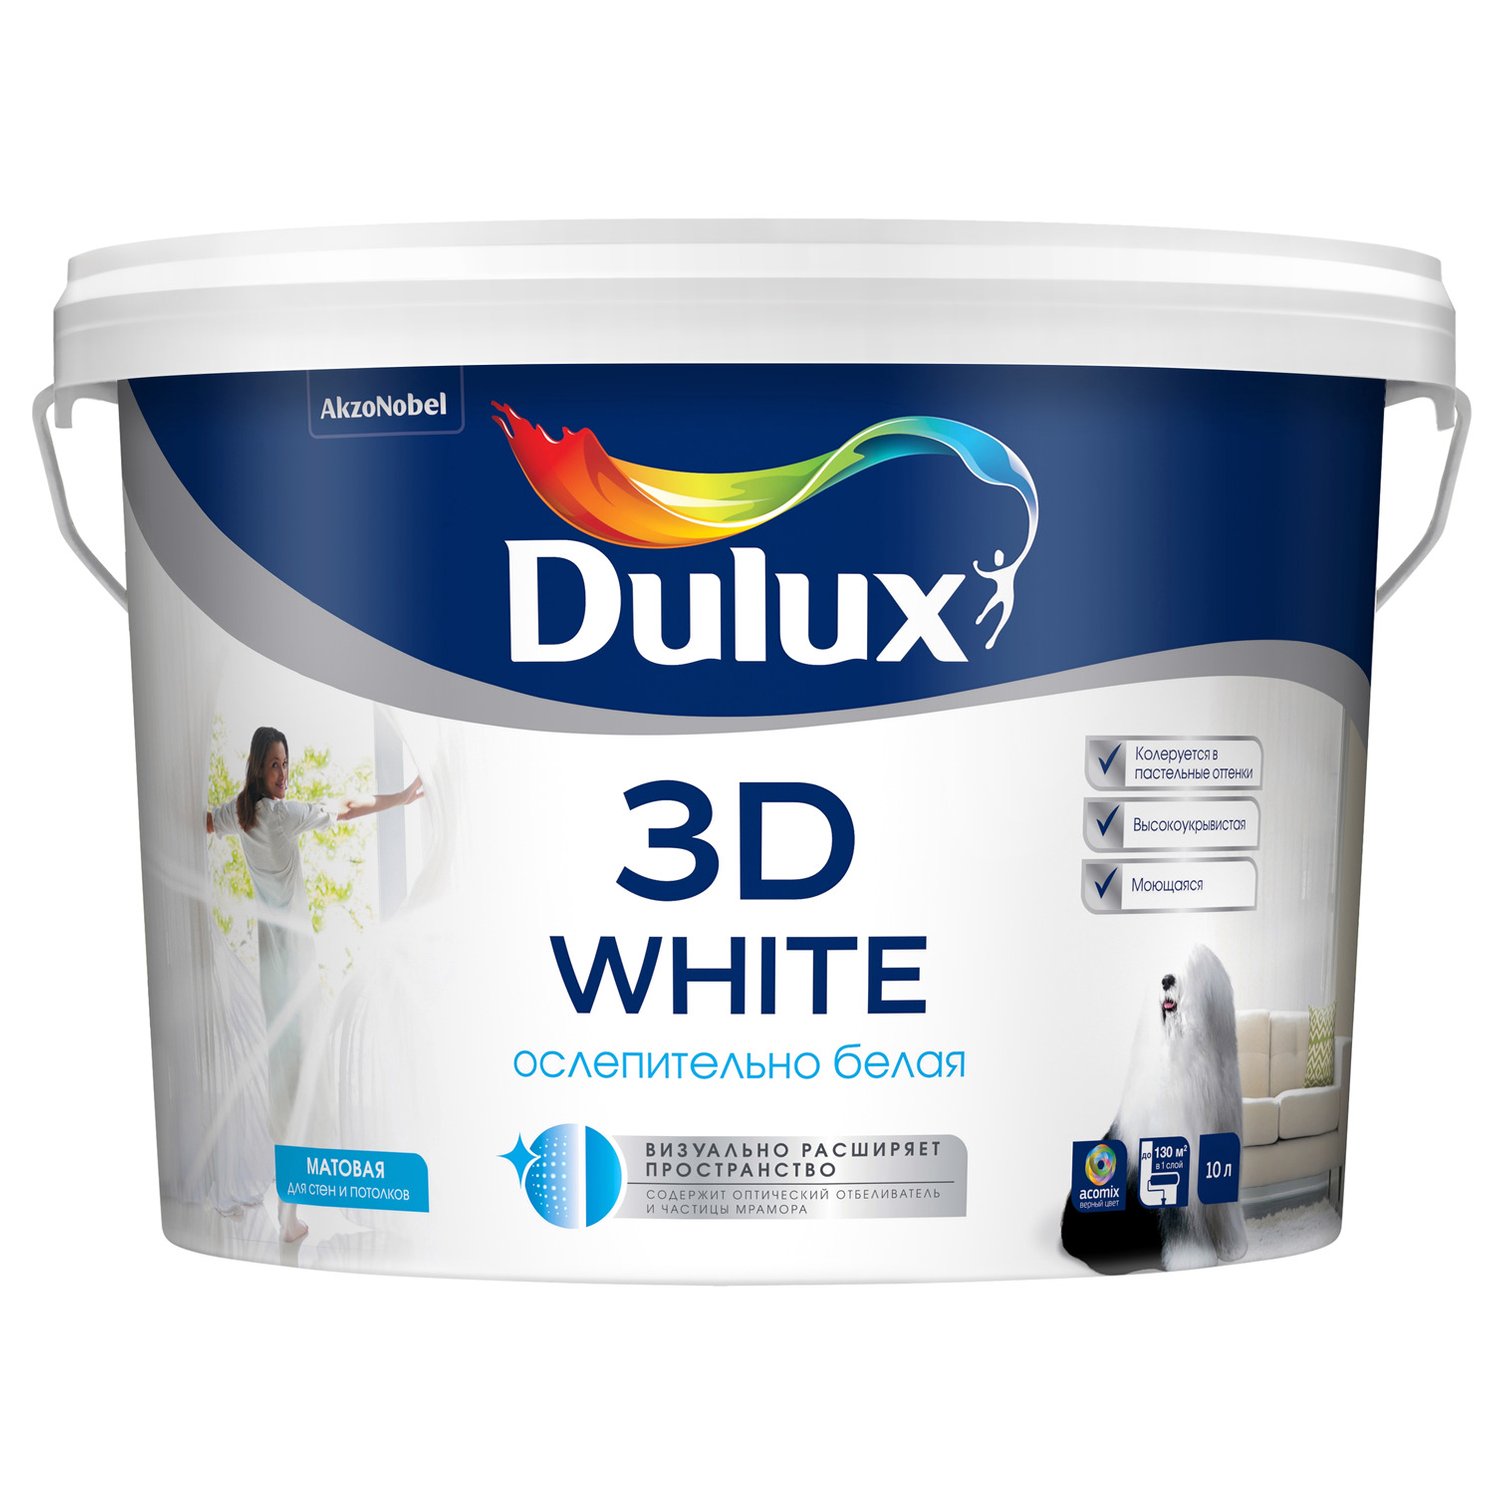 Купить Dulux 3D White (ослепительно белая), 10 л